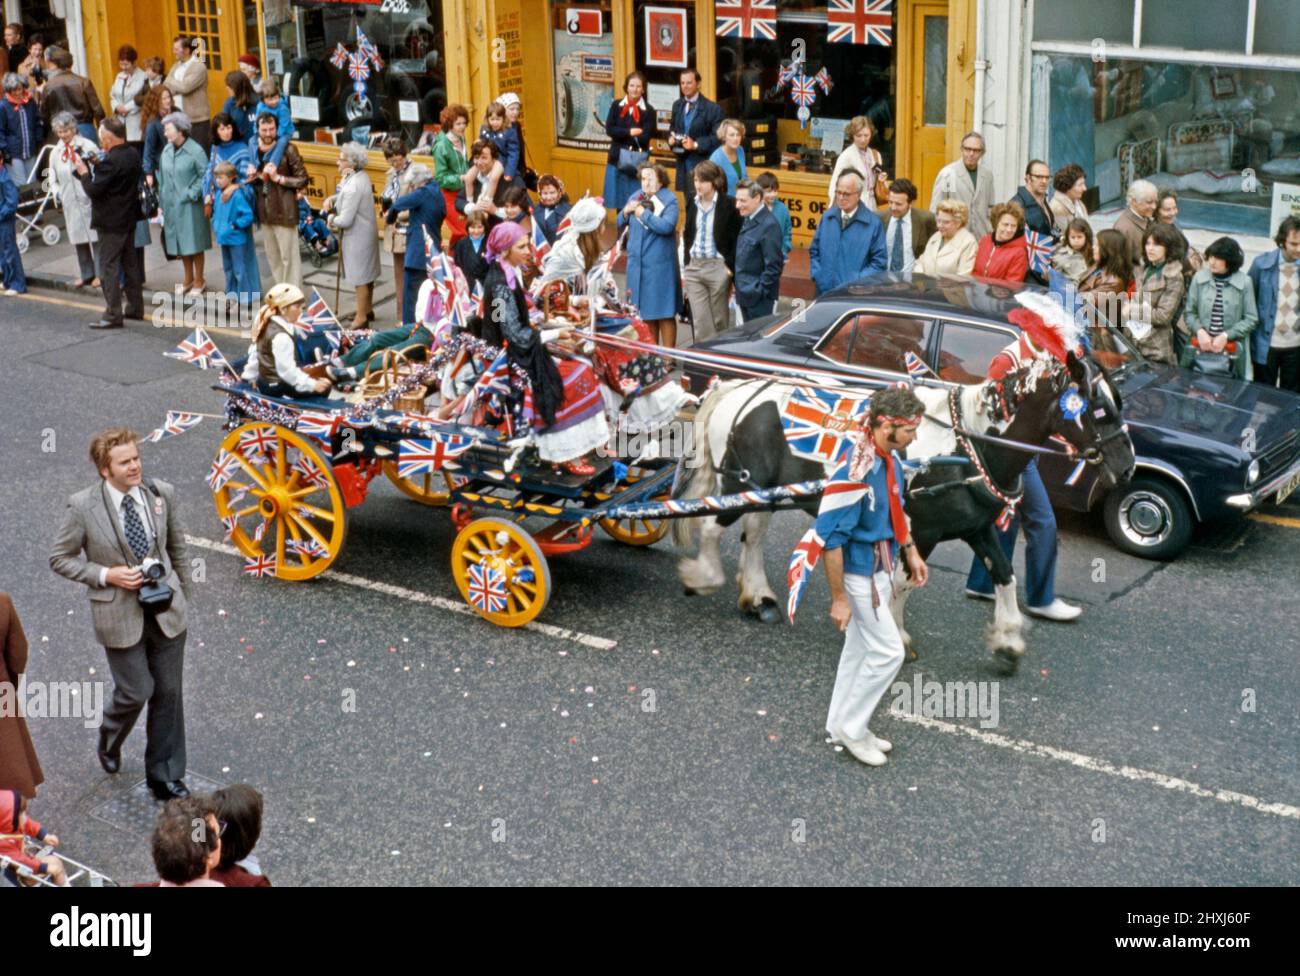 Eine Parade, die am 6. Juni 1977 zur Feier des Silbernen Jubiläums von Königin Elizabeth II. Stattfand Dies fand in Sheen Lane, East Sheen, im Londoner SW14, England, statt. Hier fährt ein Zigeunerpferd und ein Wagen die Straße entlang. Union Jack Flaggen in allen Größen sind zu sehen. Der 25. Jahrestag der Krönung der Königin fand am 6. Februar 1977 statt, aber der 7. Juni war für einen wichtigen offiziellen und inoffiziellen Feiertag im ganzen Land bestimmt. Dieses Bild stammt aus einer alten Amateur-Farbtransparenz – einem Vintage-Foto aus dem Jahr 1970s. Stockfoto